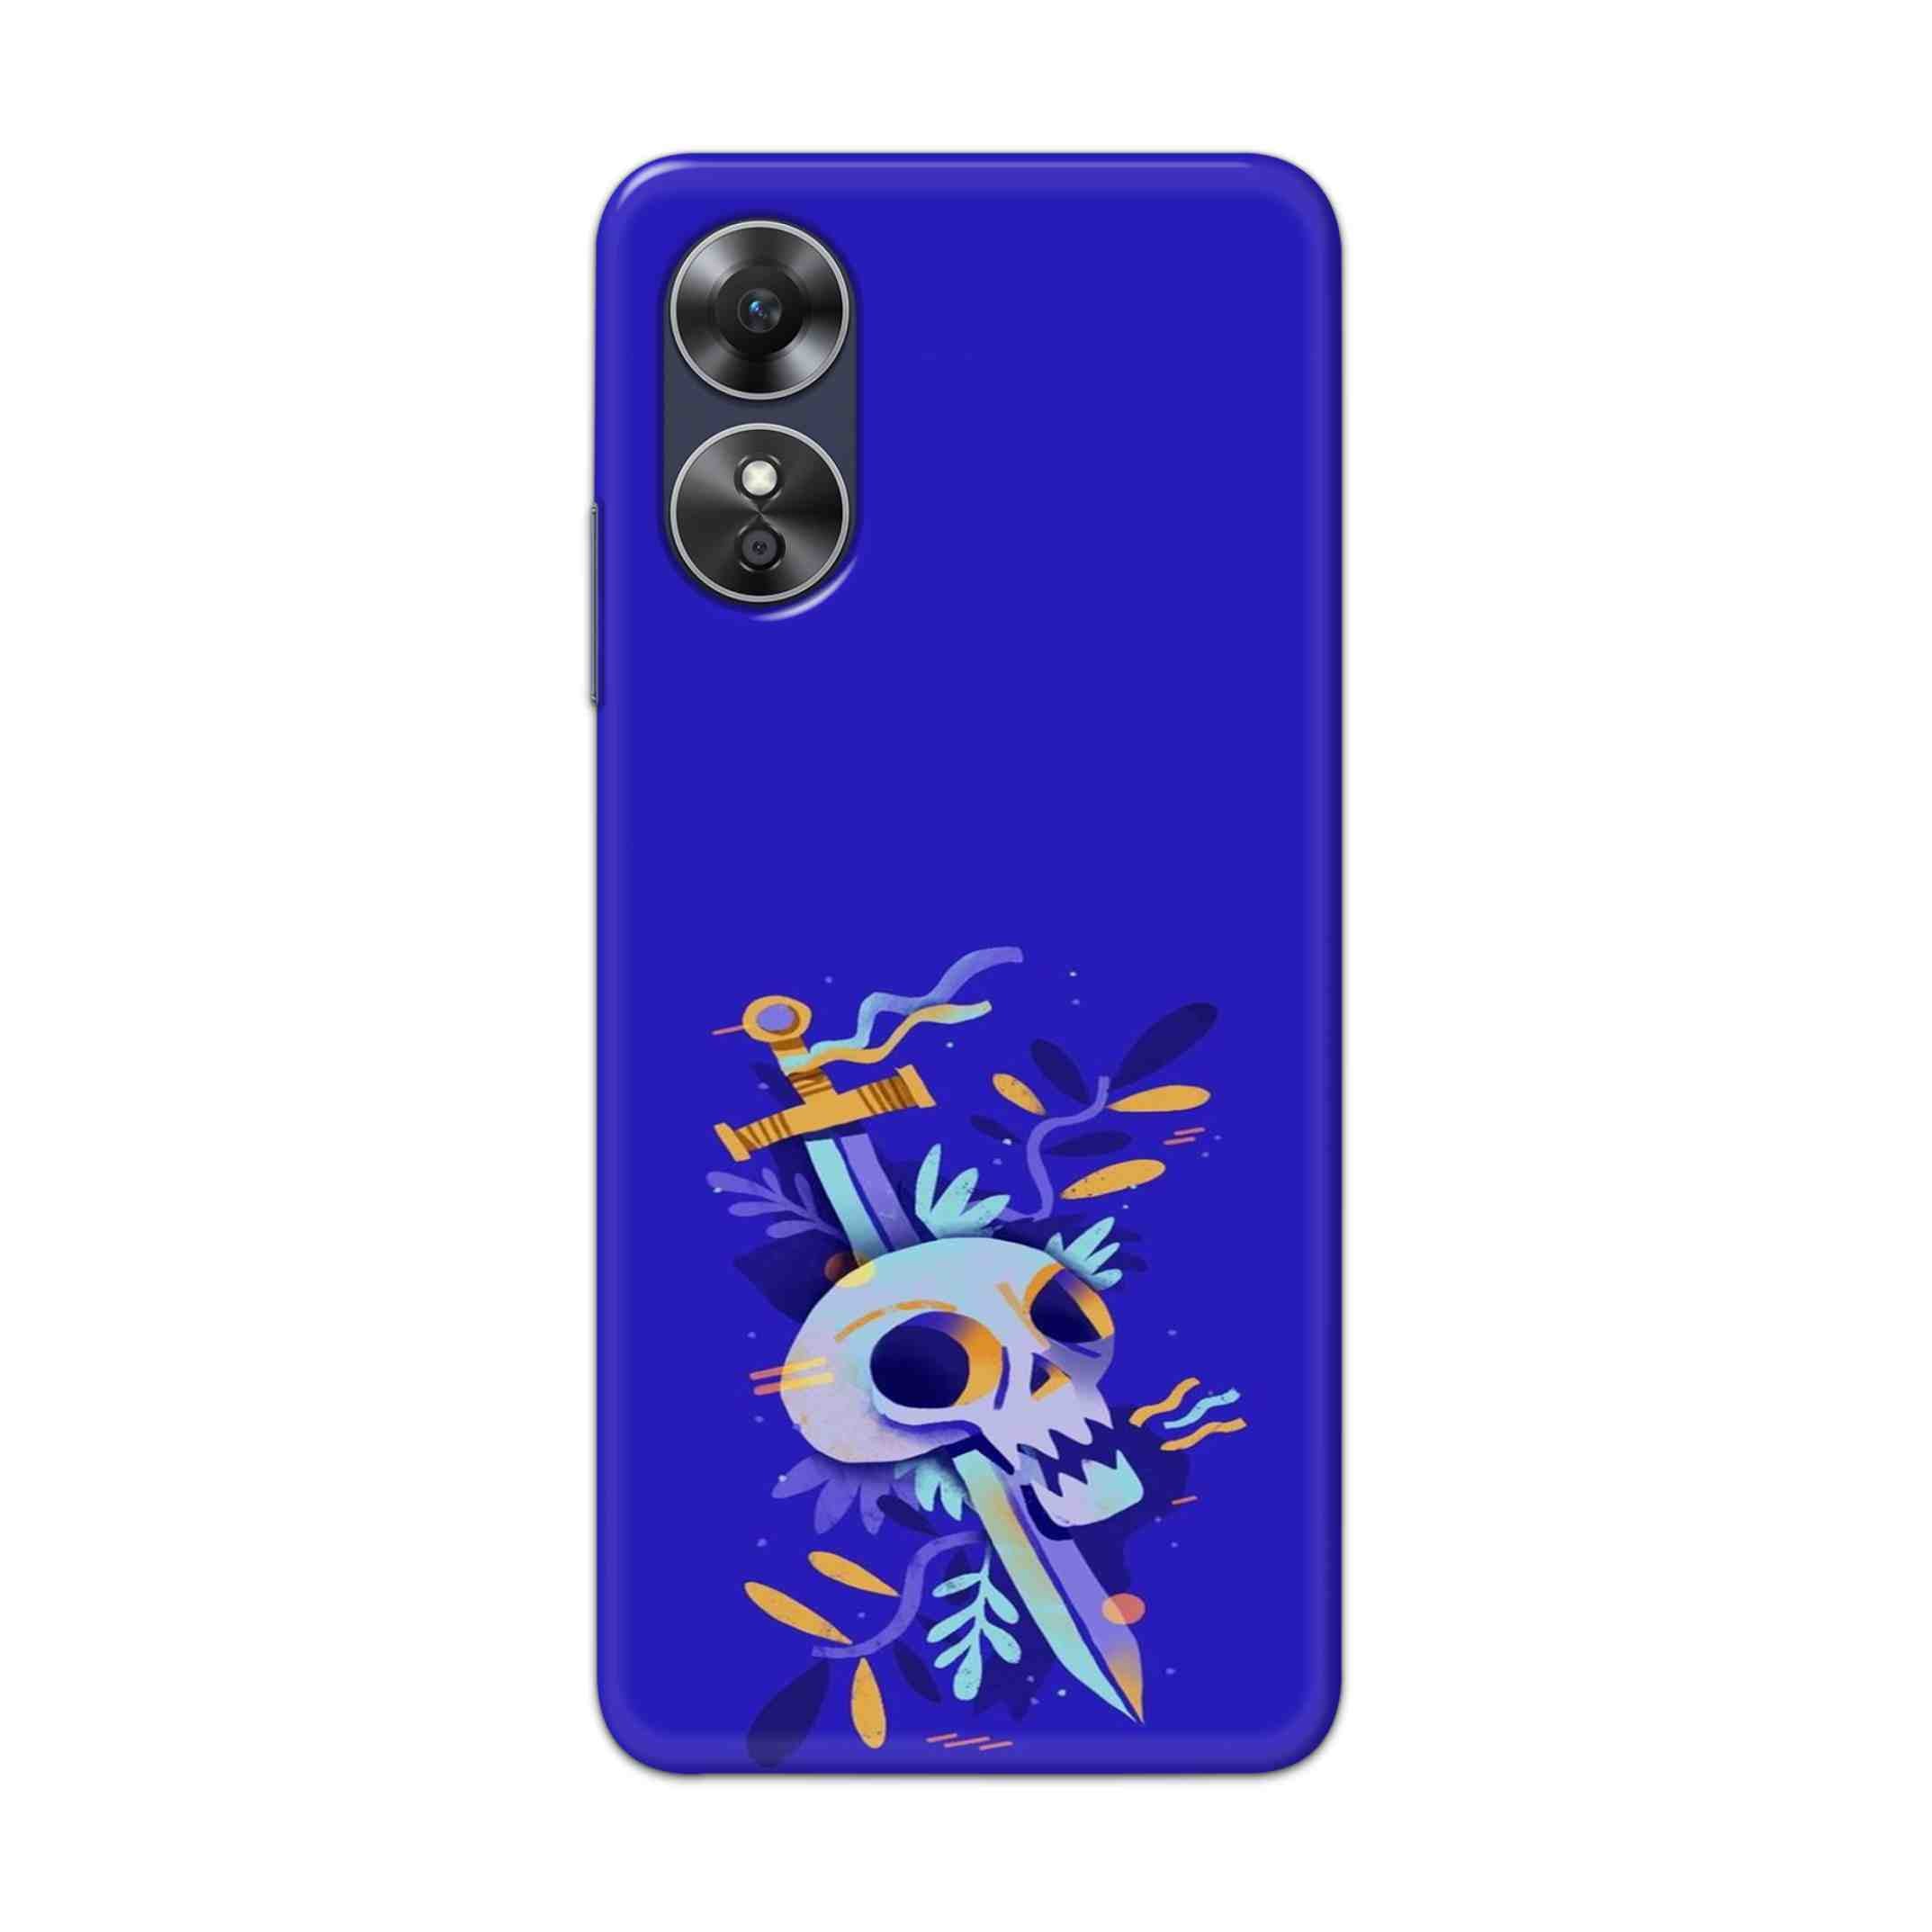 Buy Blue Skull Hard Back Mobile Phone Case Cover For Oppo A17 Online